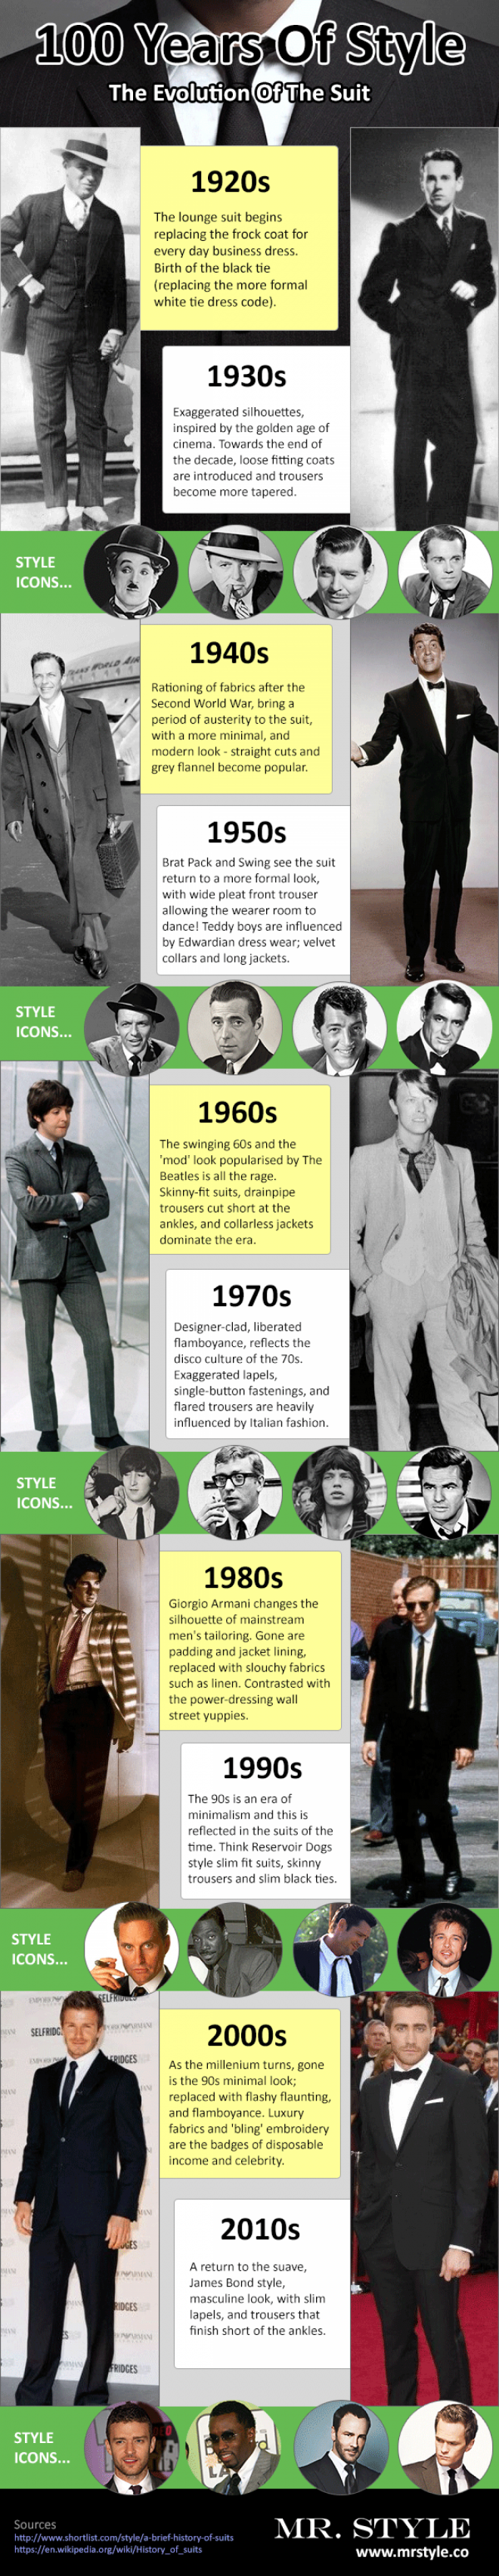 Cómo ha cambiado la ropa de los hombres en los últimos 100 años.